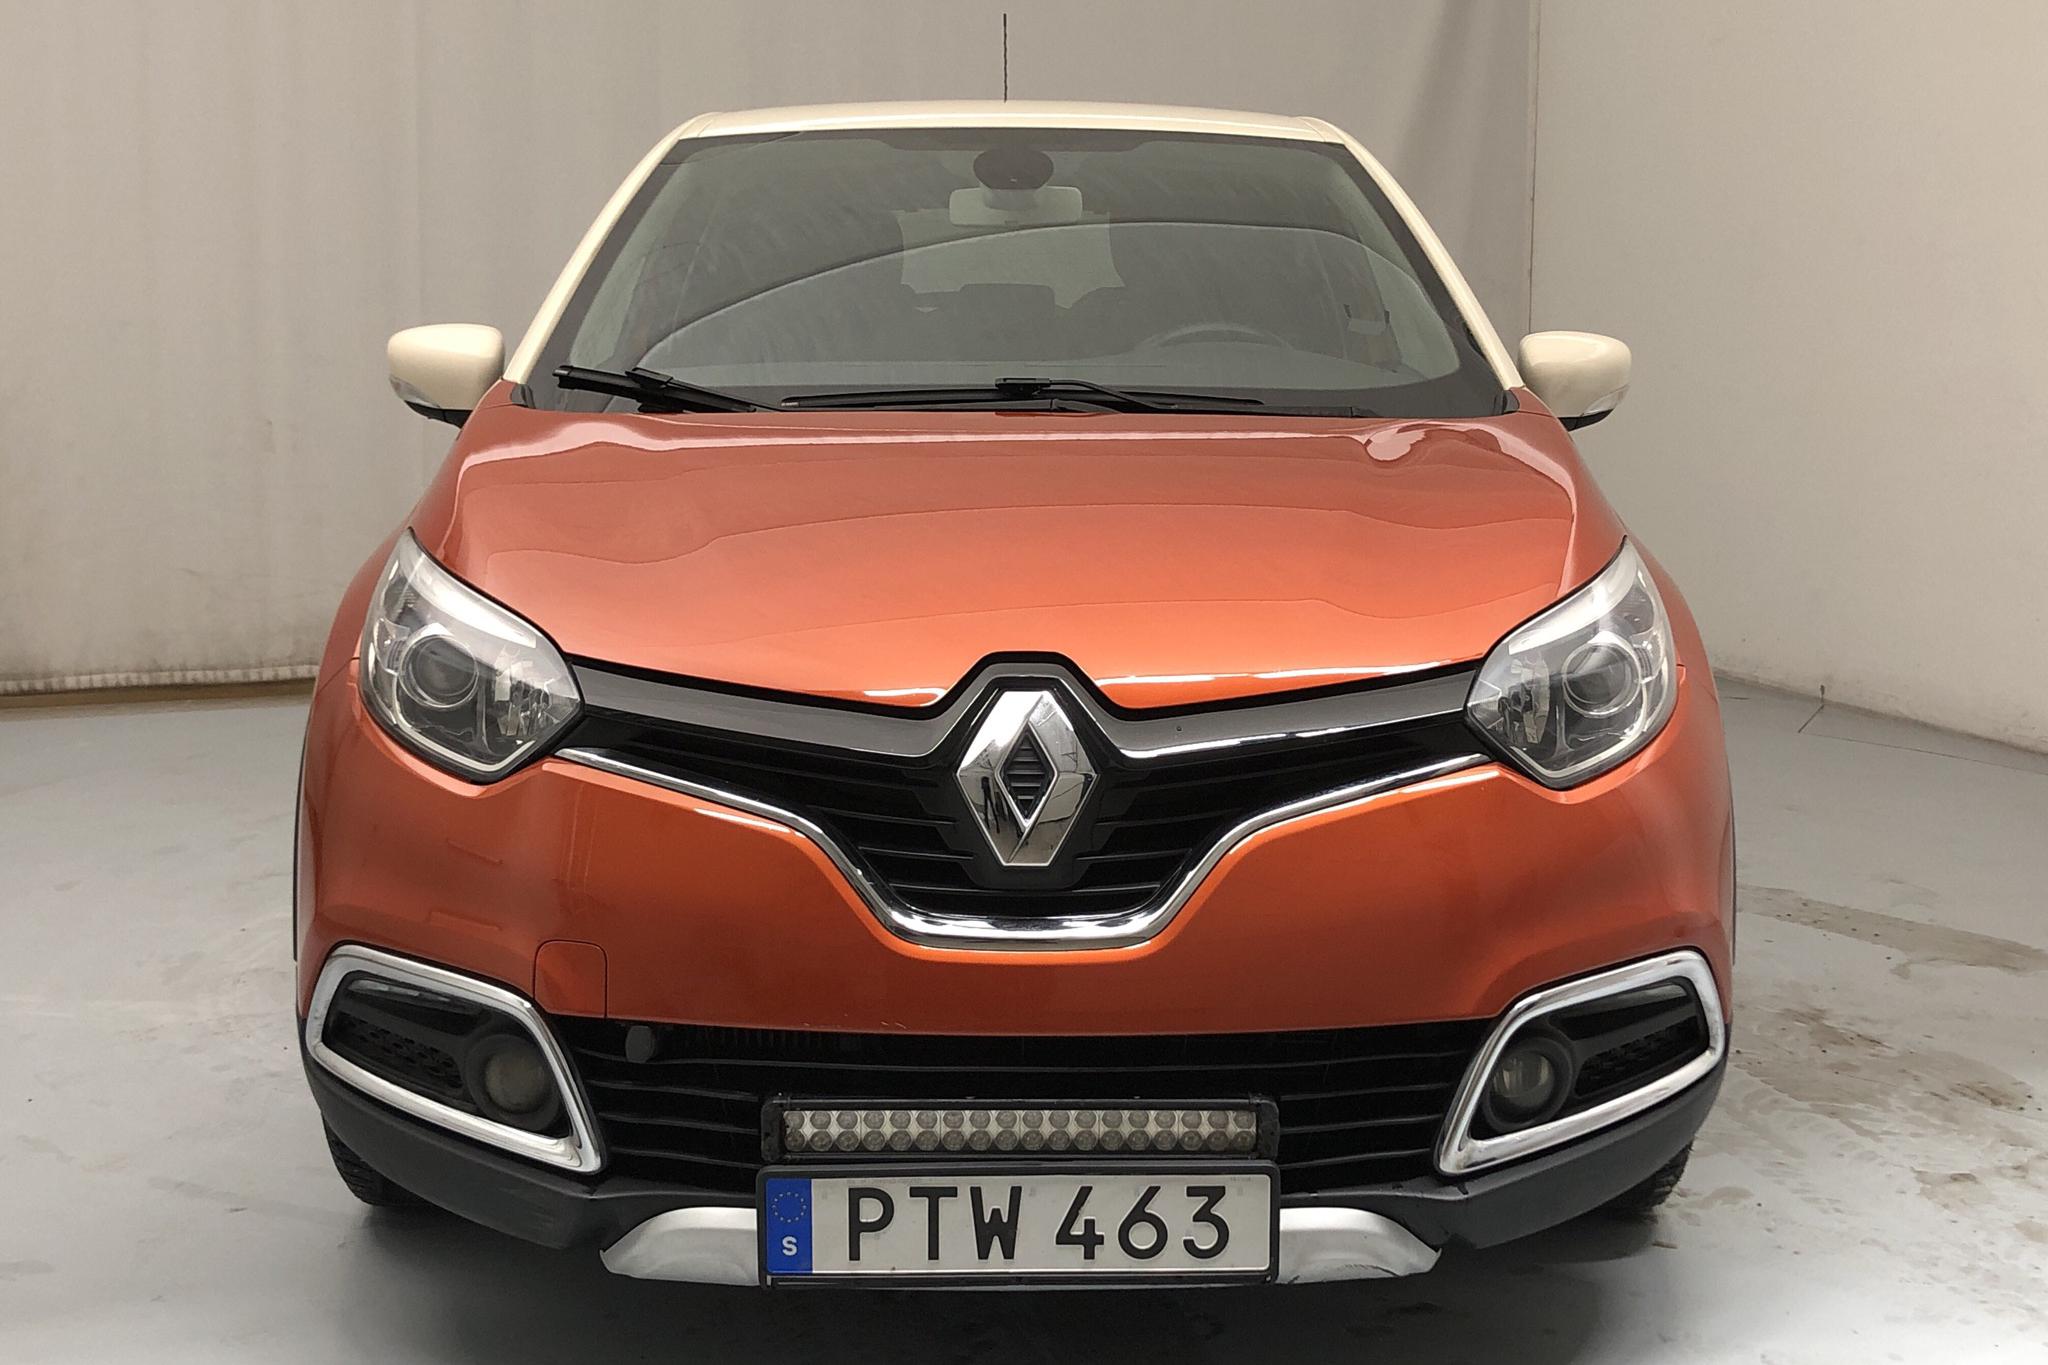 Renault Captur 1.2 TCe (120hk) - 63 760 km - Automatic - 2015